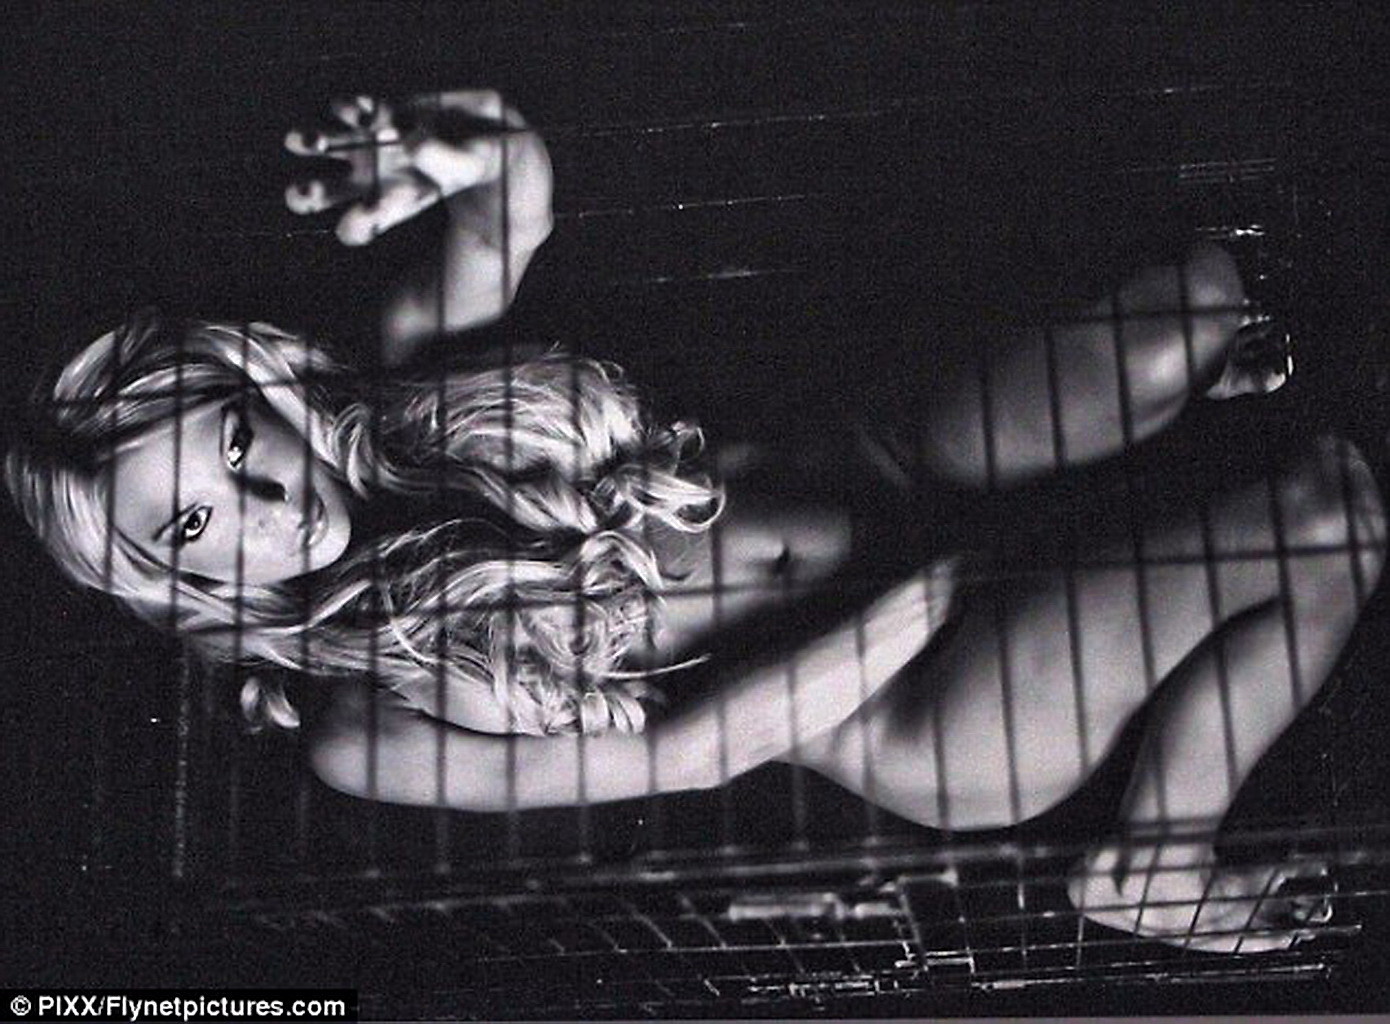 Brooke hogan nue dans une cage pour la nouvelle campagne publicitaire de peta
 #75292022